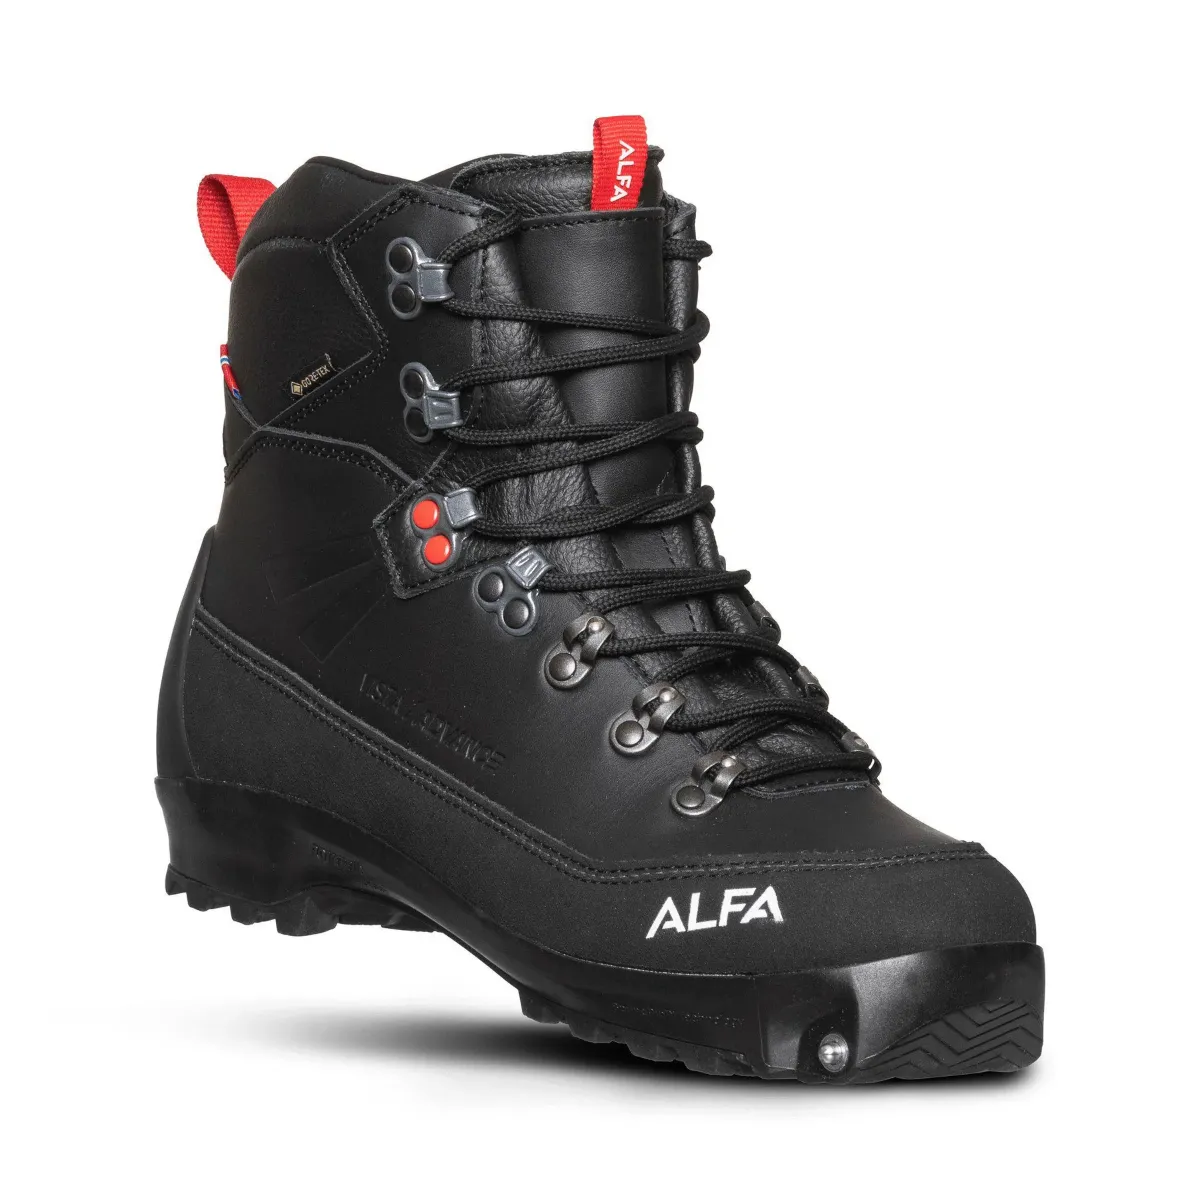 Alfa-Vista-Advance-GTX-xplore-skisko-dame